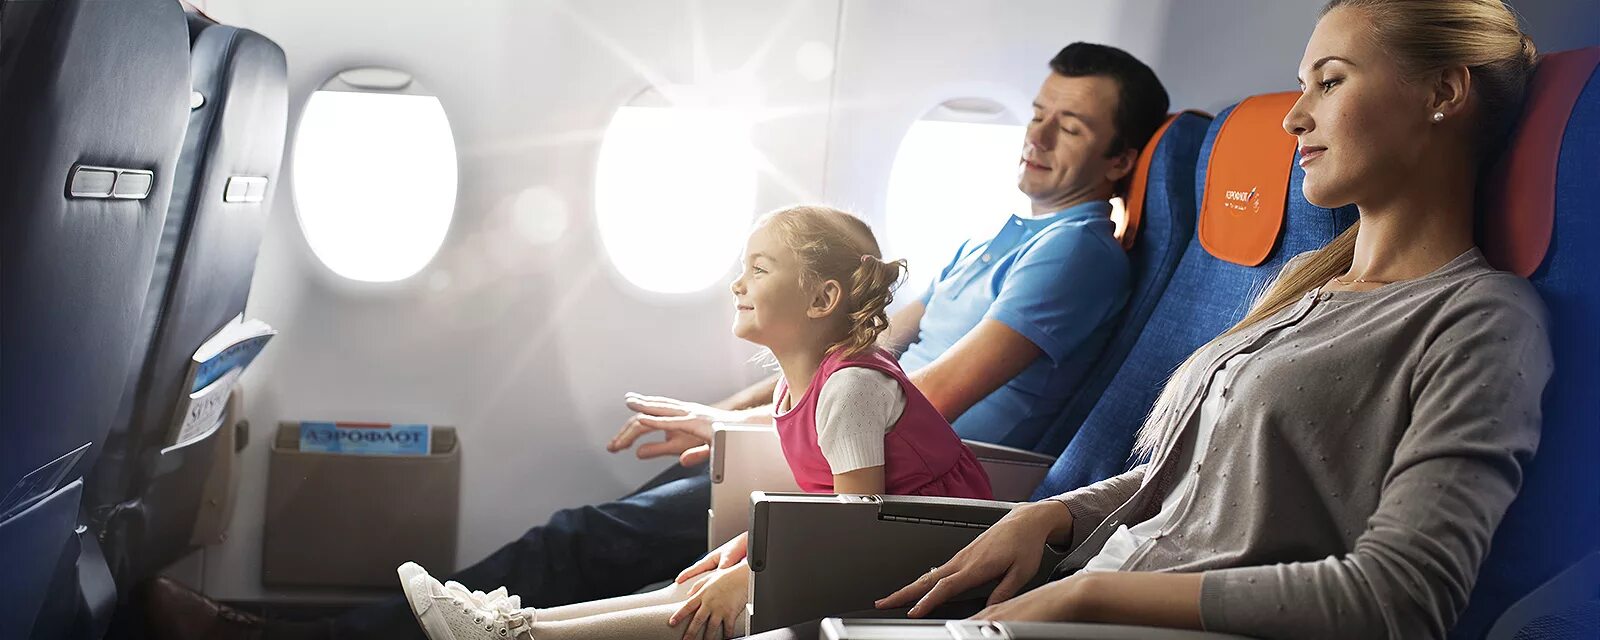 Путешествие на самолете. Самолет для детей. Семья в самолете. Путешествие с семьей на самолете.